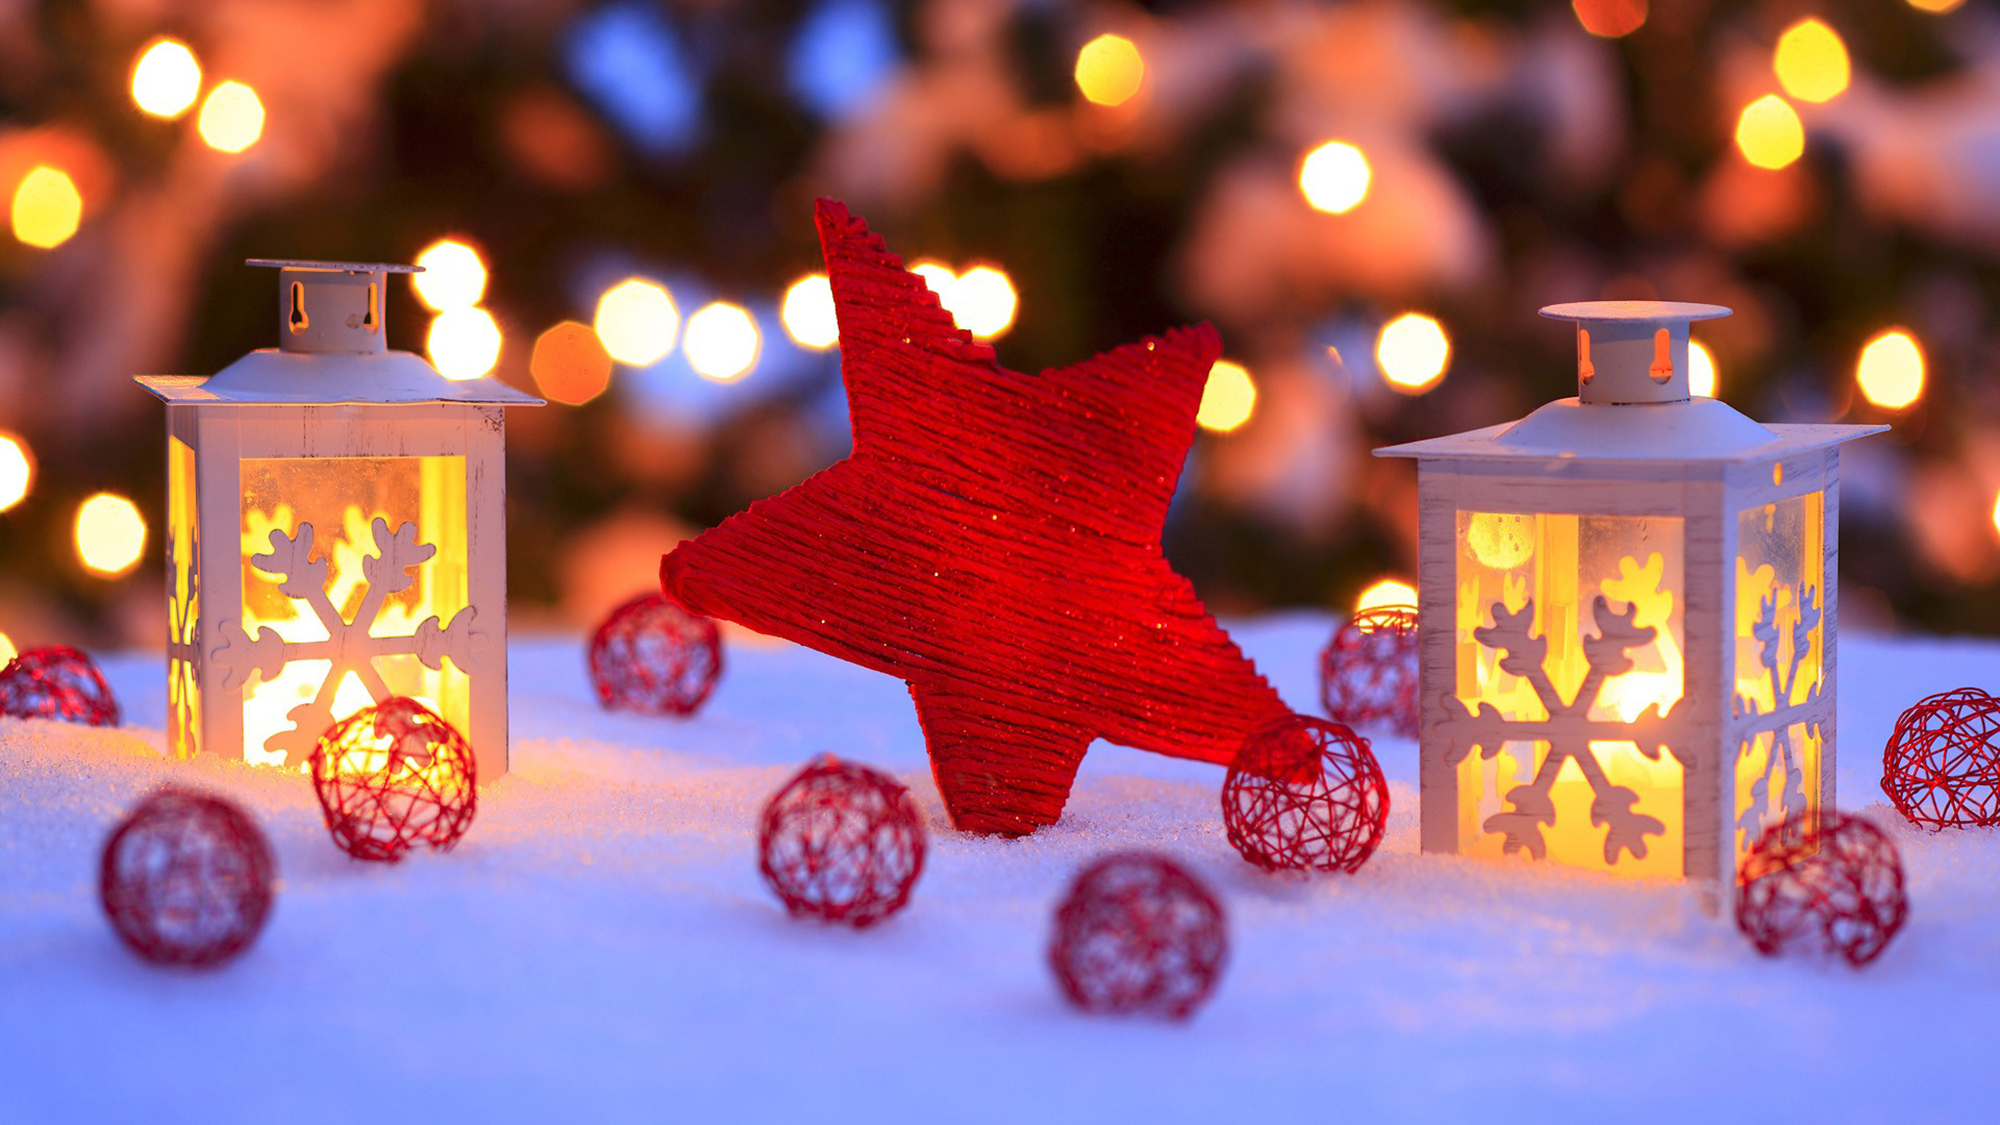 фонарь свеча рождество новый год снег lantern candle Christmas new year snow бесплатно